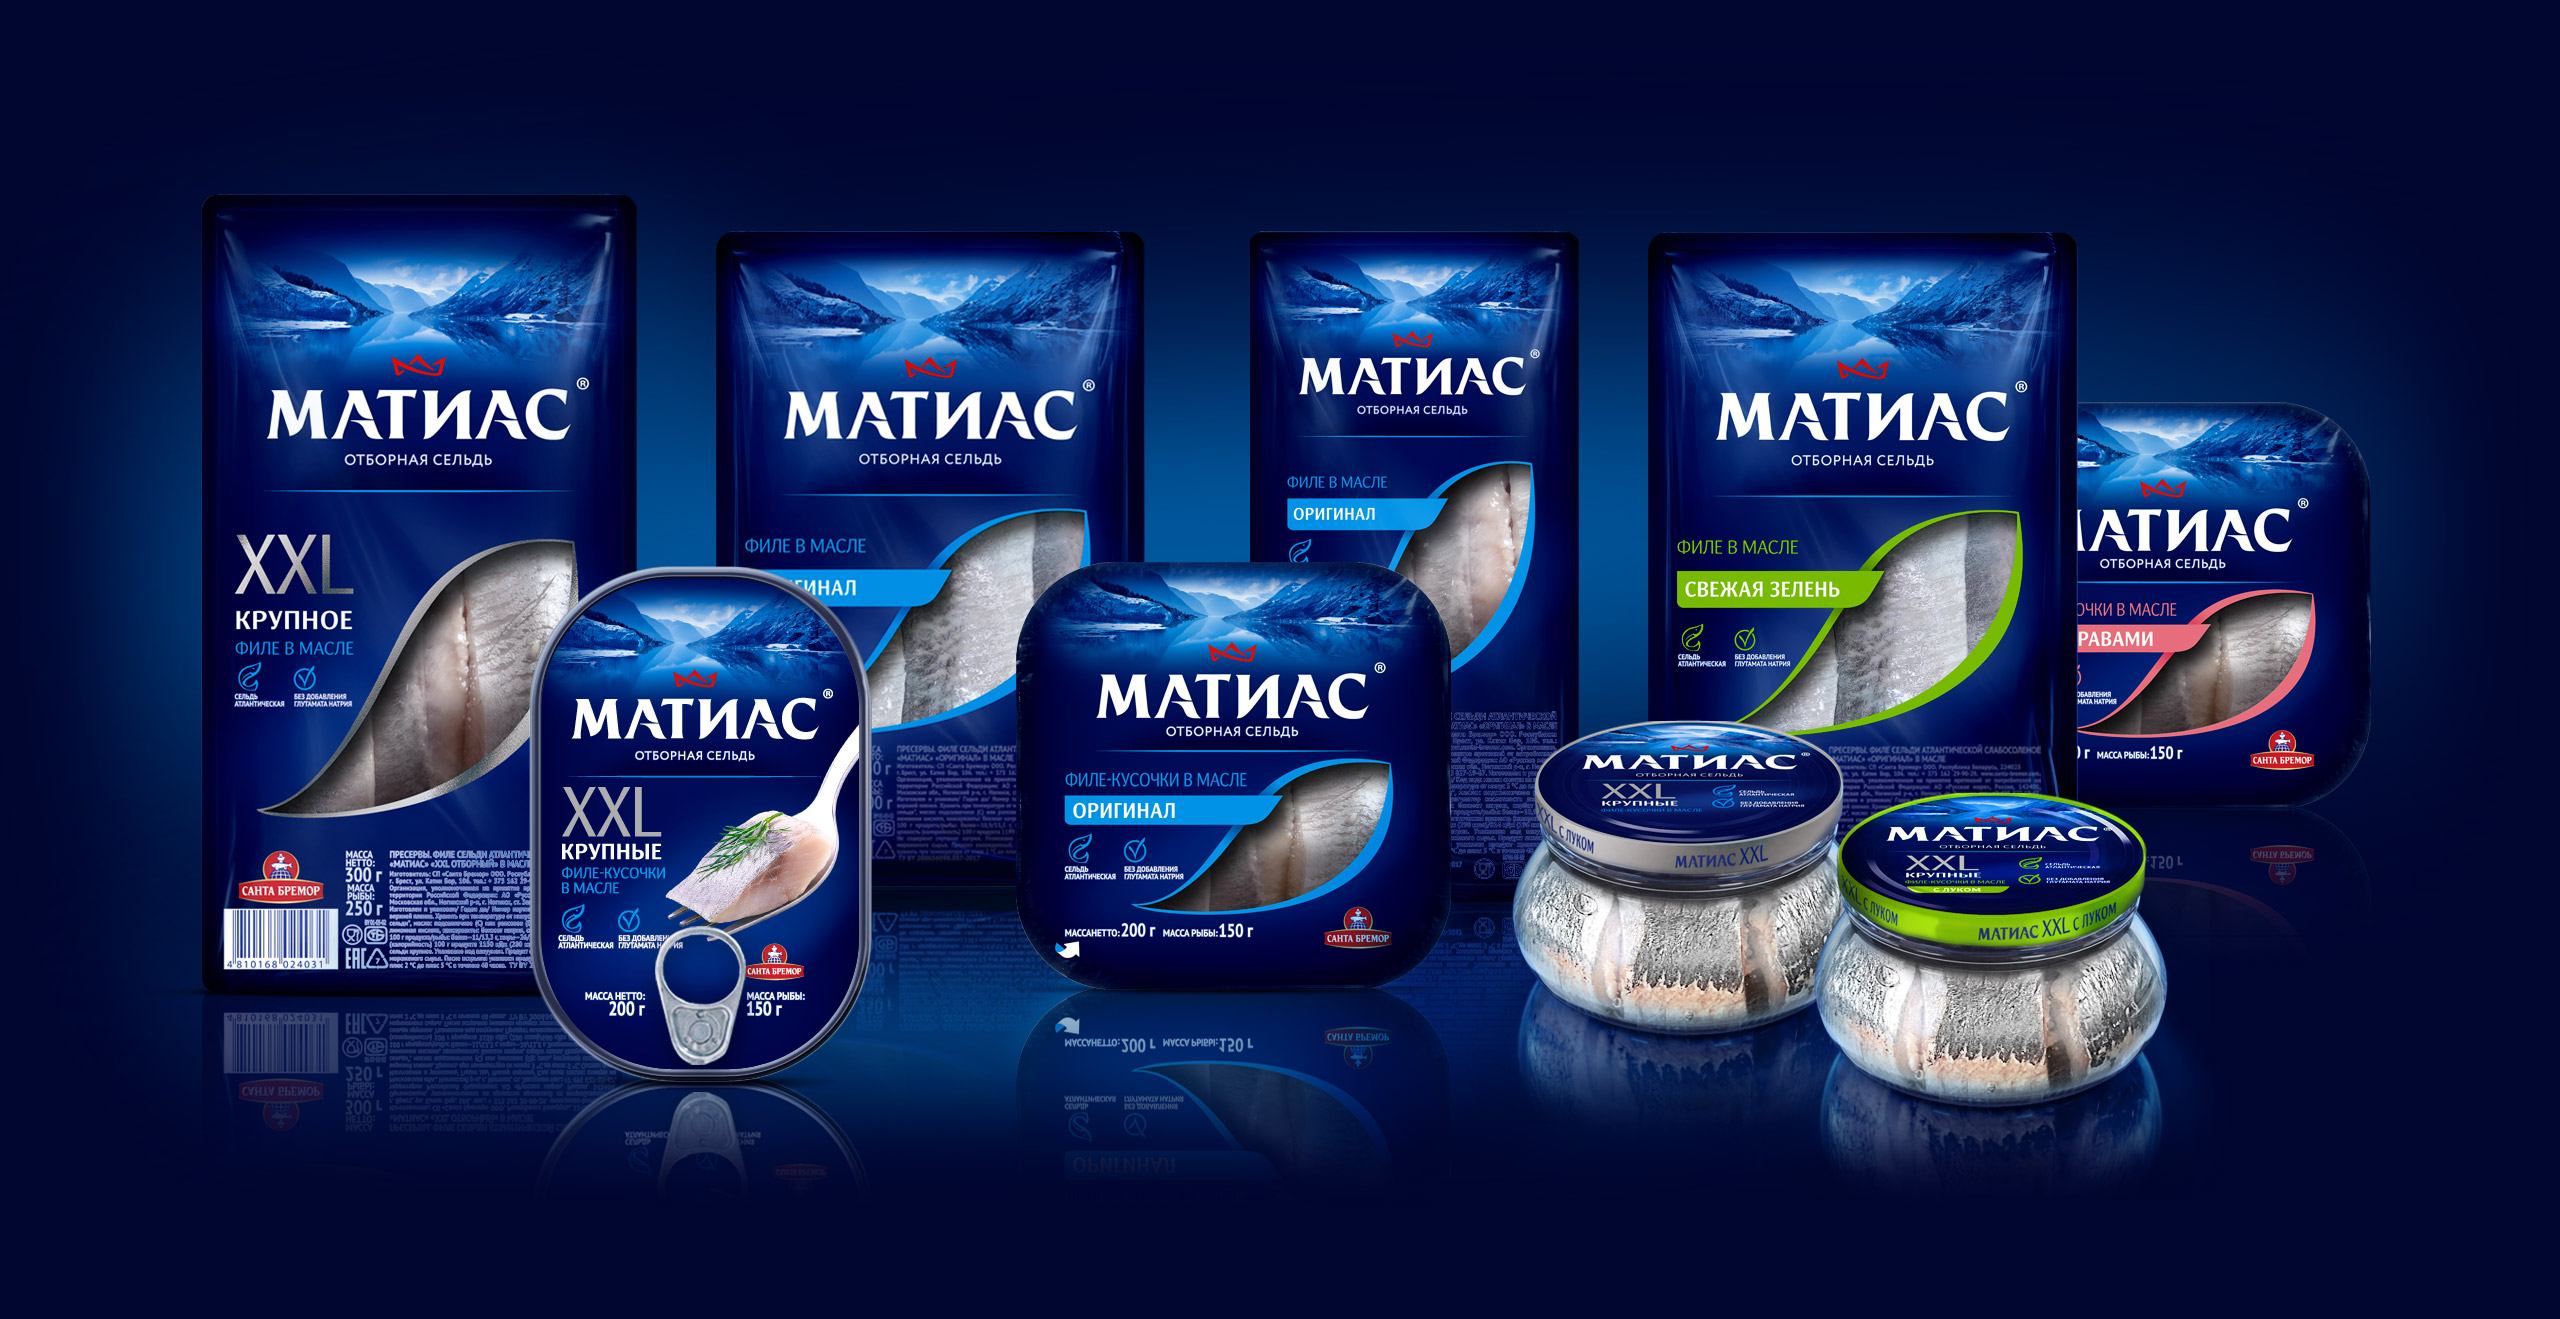 mattias-packaging-design-line.jpg